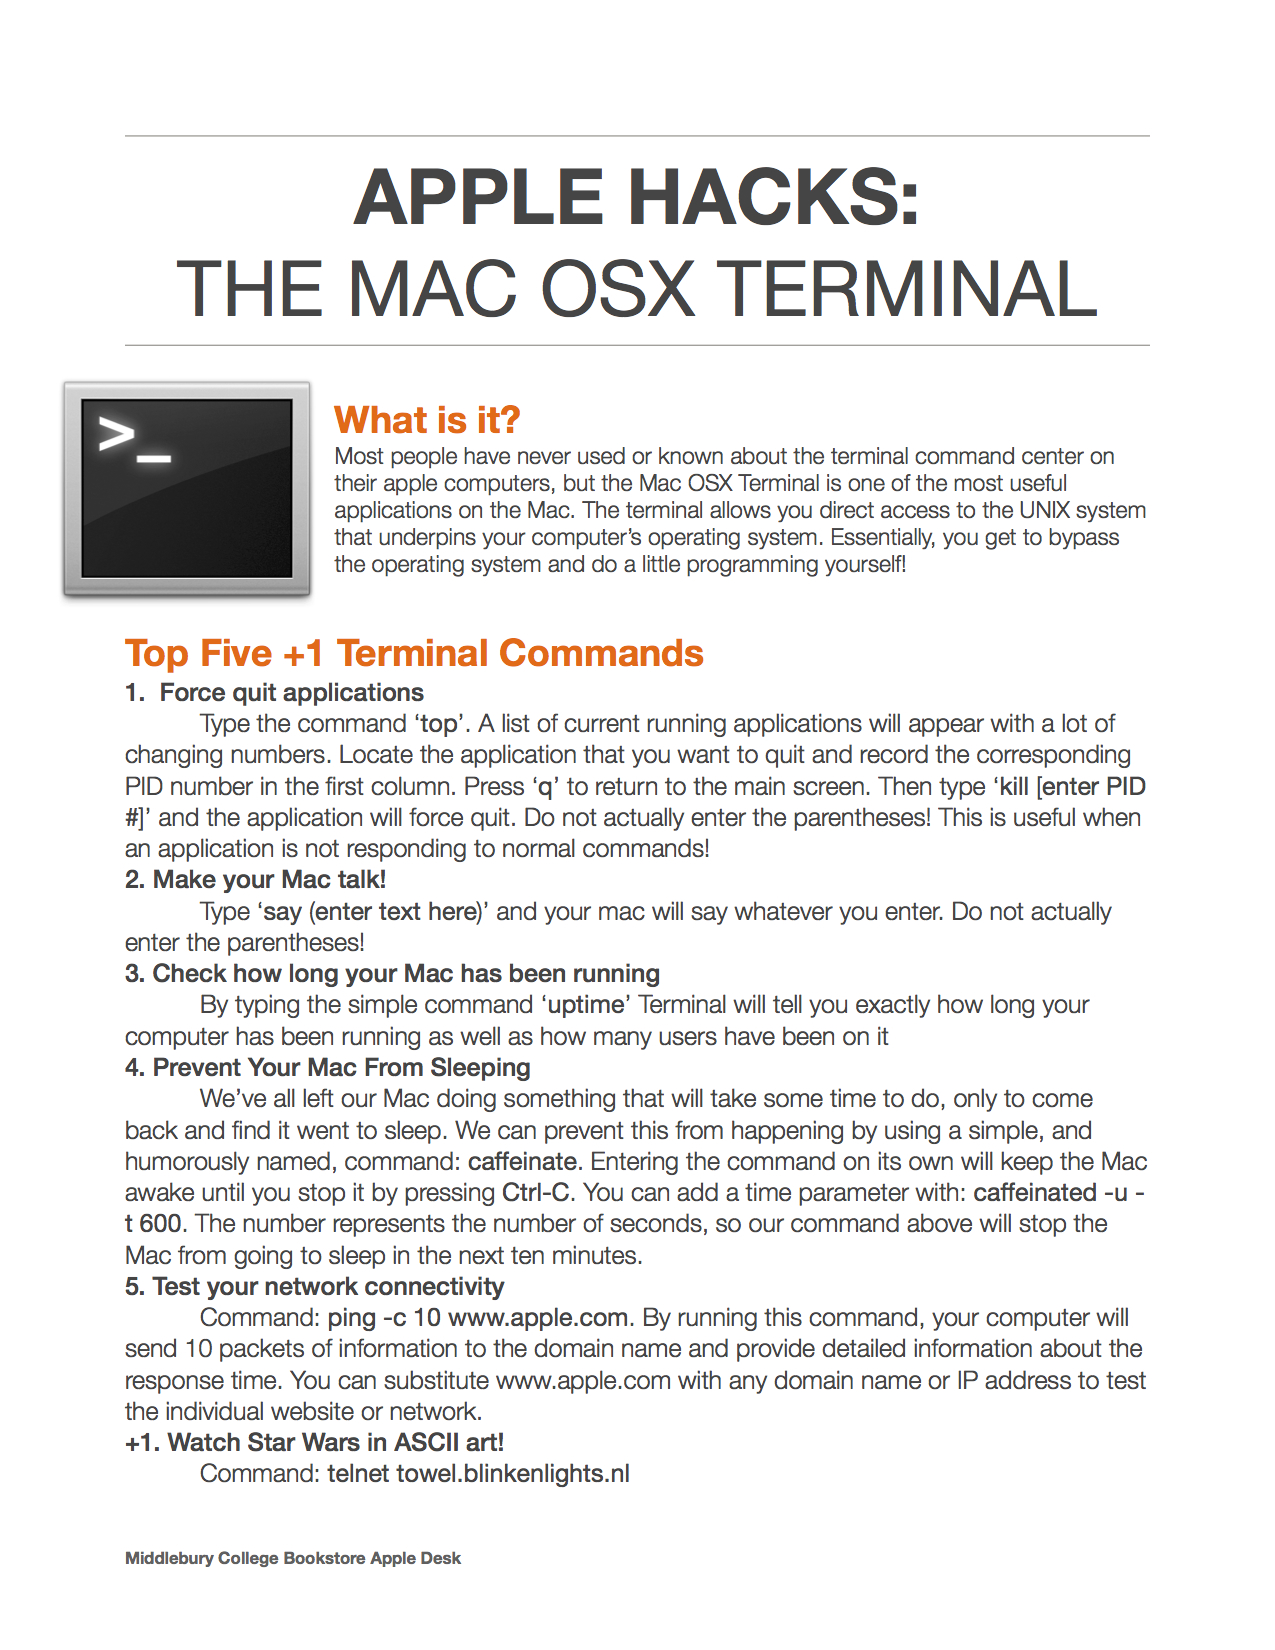 Mac OSX Terminal